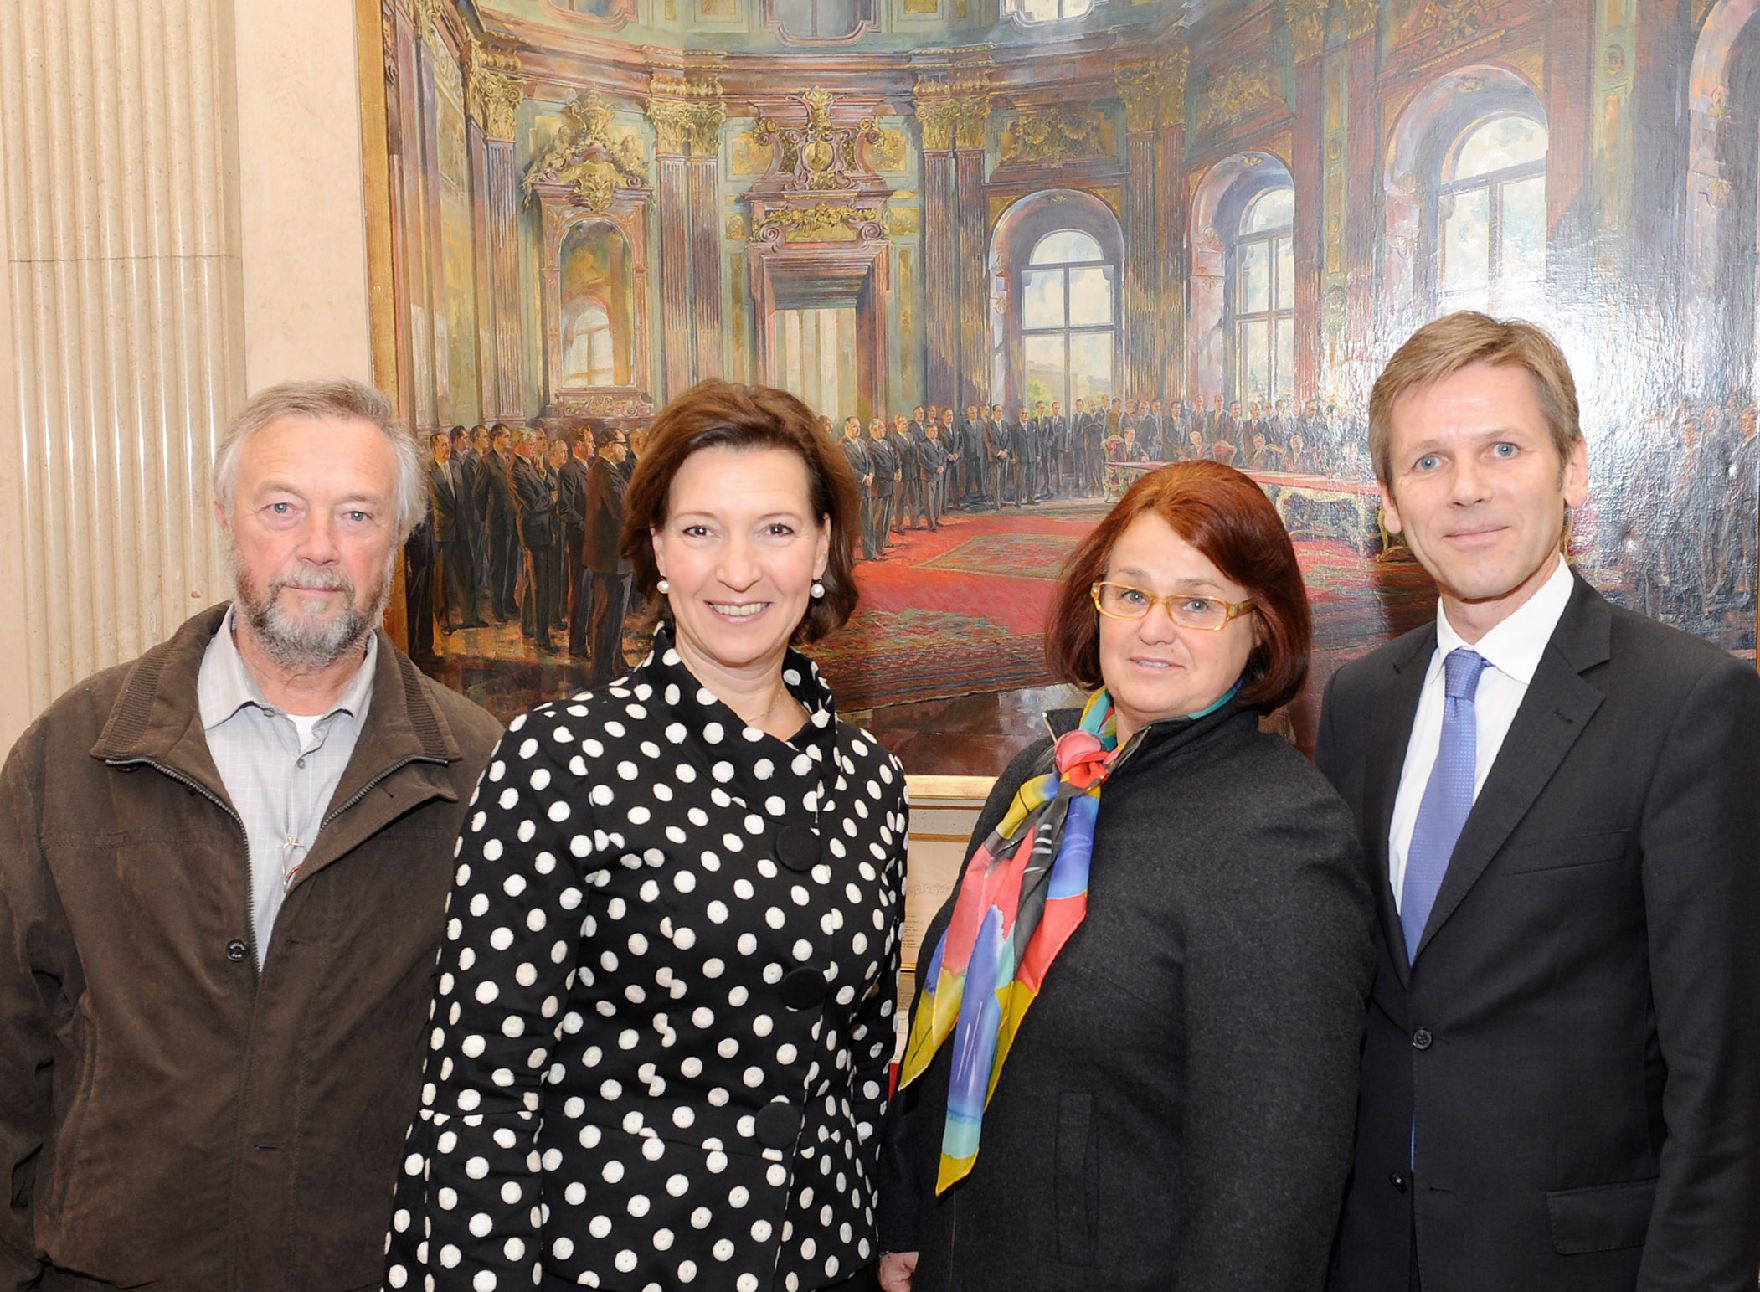 Am 26. Oktober 2012 empfing Frauenministerin Gabriele Heinisch-Hosek im Rahmen des Nationalfeiertages Besucherinnen und Besucher im Bundeskanzleramt.